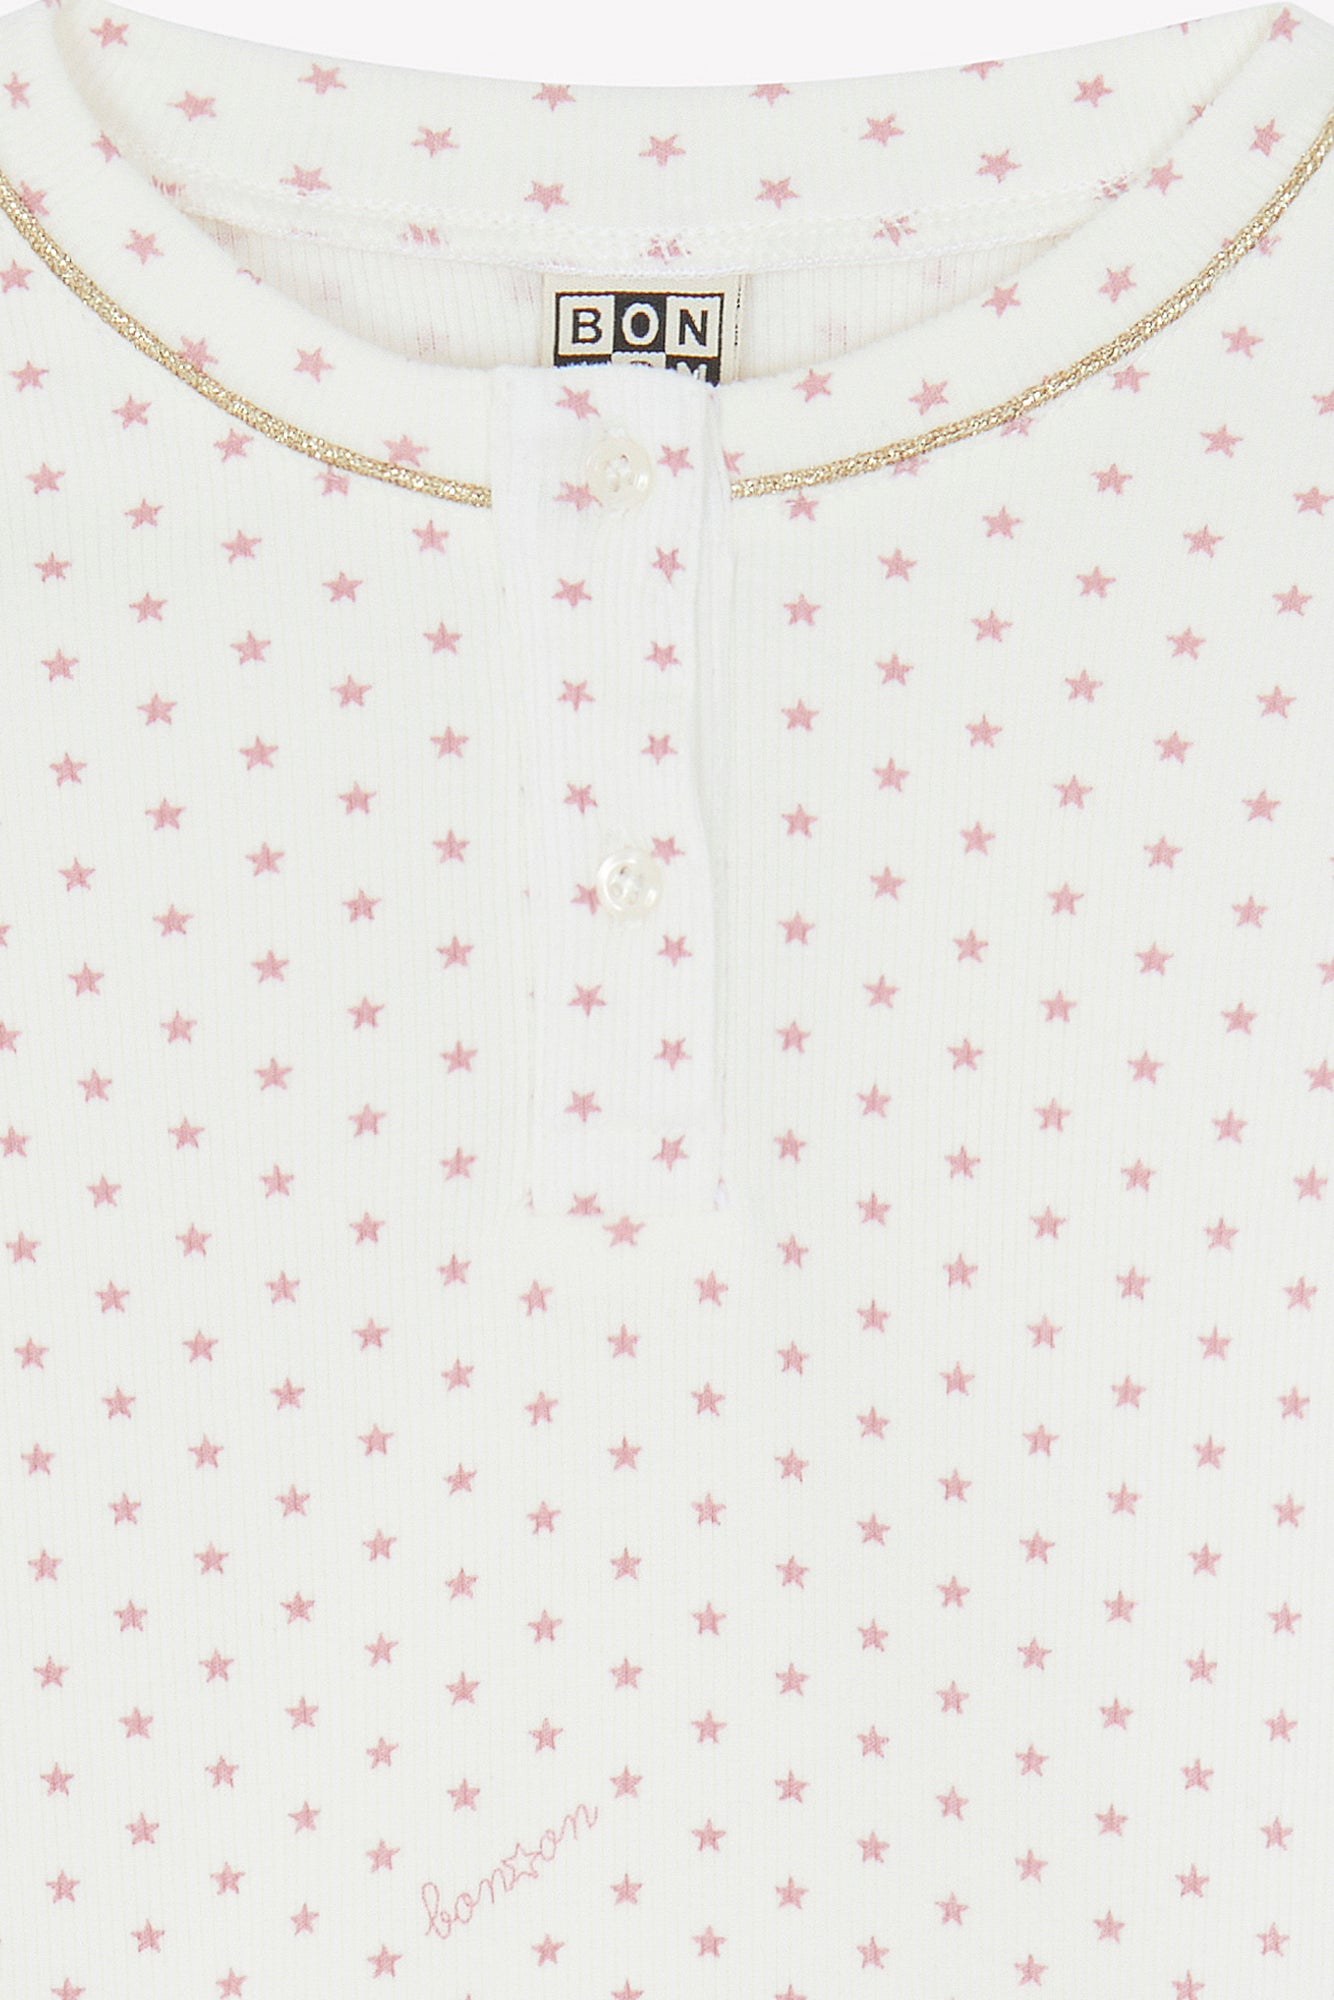 Outfit - Pajamas Pink Print stars